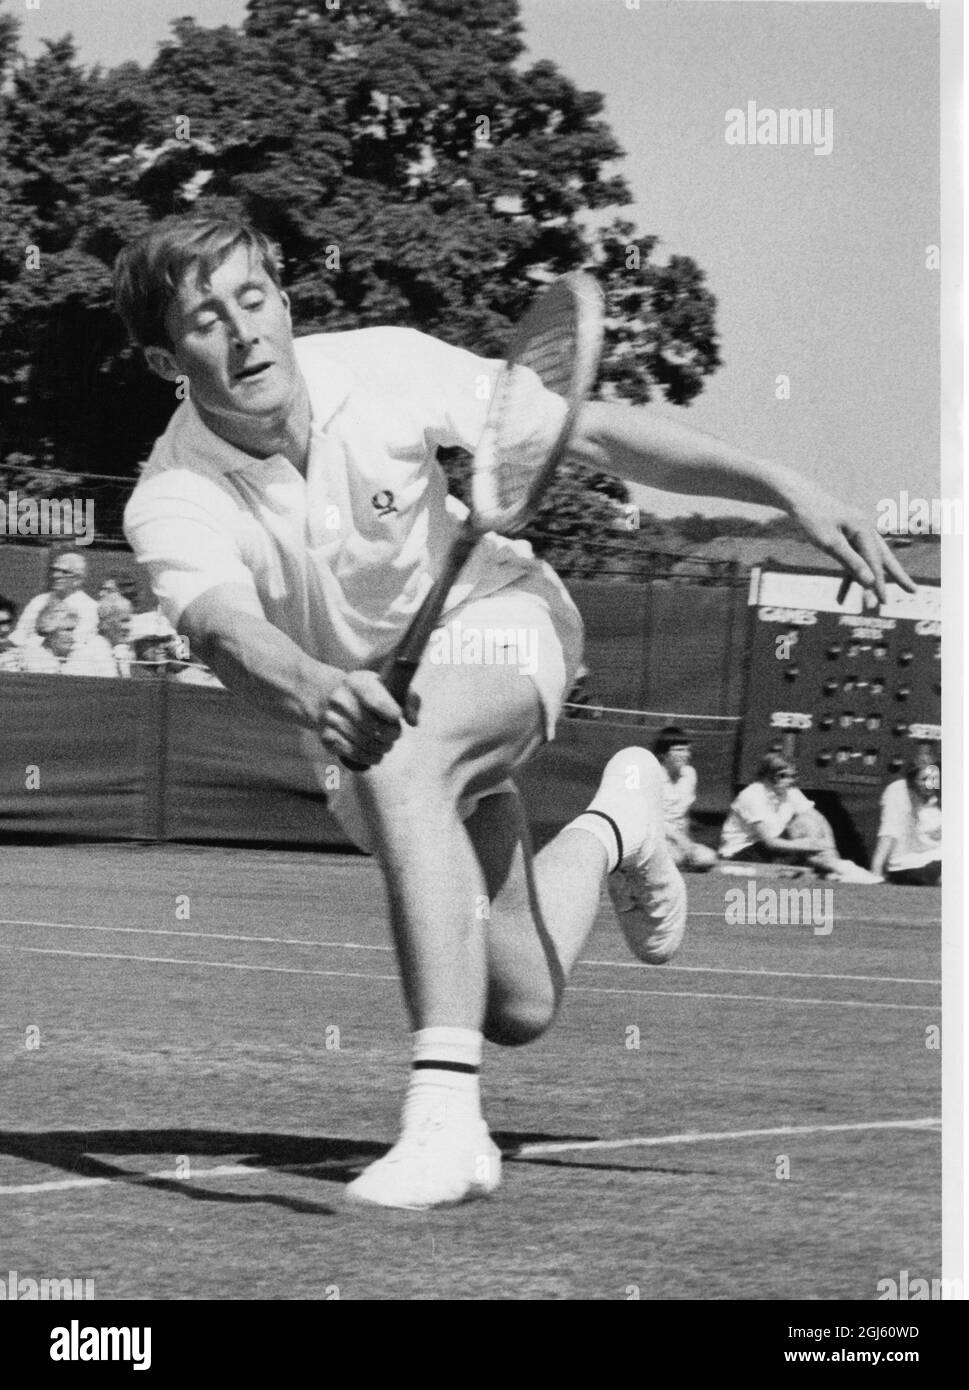 Peter Curtis joueur de tennis britannique Tournoi de tennis de pelouse de Beckenham Kent juin 1968 Banque D'Images